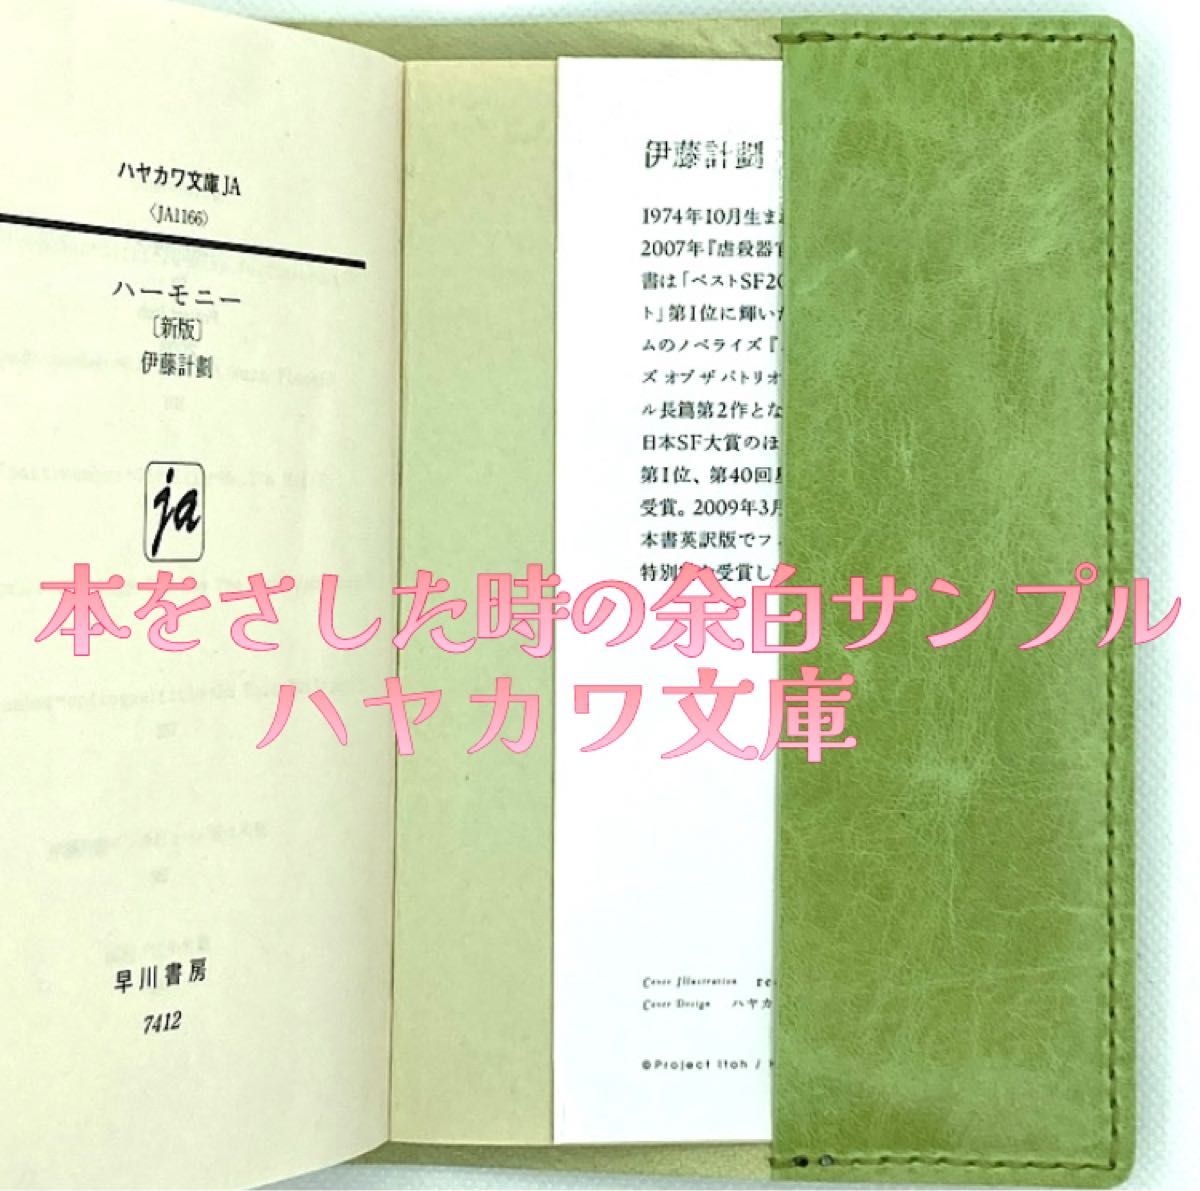 3【ハンドメイド】ローズ馬革プルアップ ハヤカワ文庫対応ブックカバー